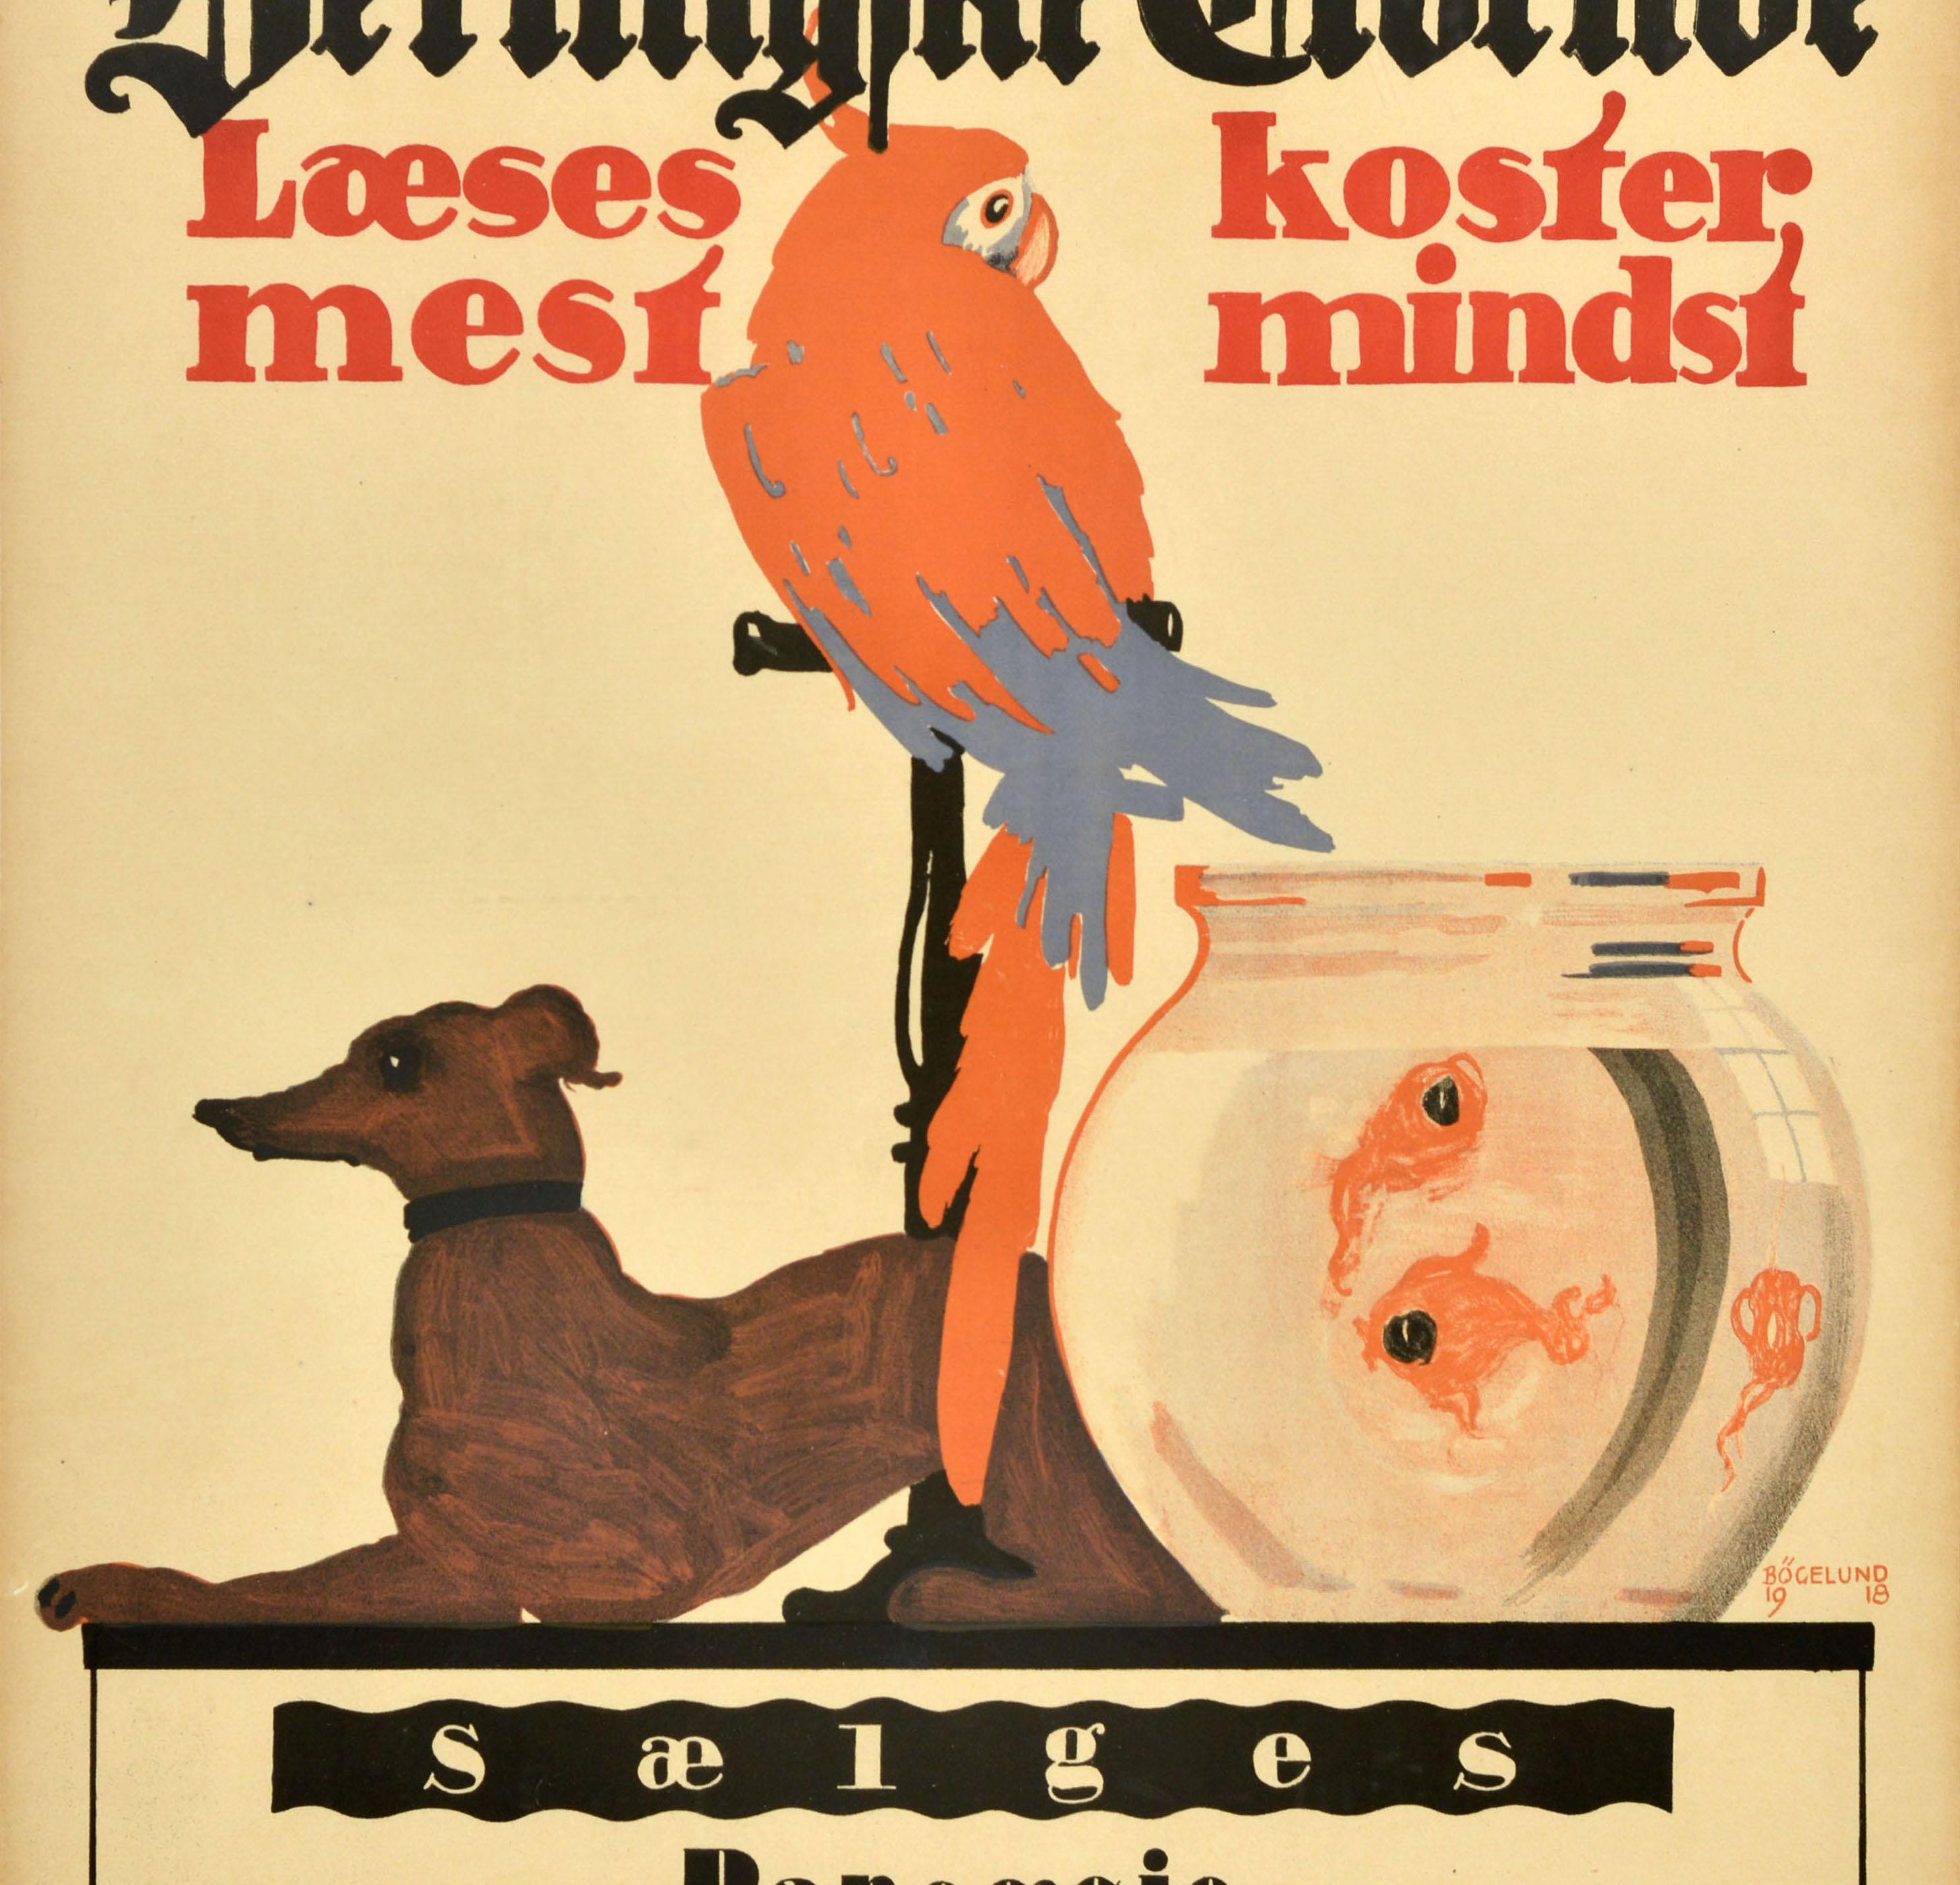 Originales antikes Werbeplakat für Anzeigen in der Berlingske Tidende / Berling Zeitung (gegründet 1749) mit großem Kunstwerk eines Papageis auf einer Vogelstange über einem Hund mit Fischen in einer Schale im Vordergrund, der Text in dänischer